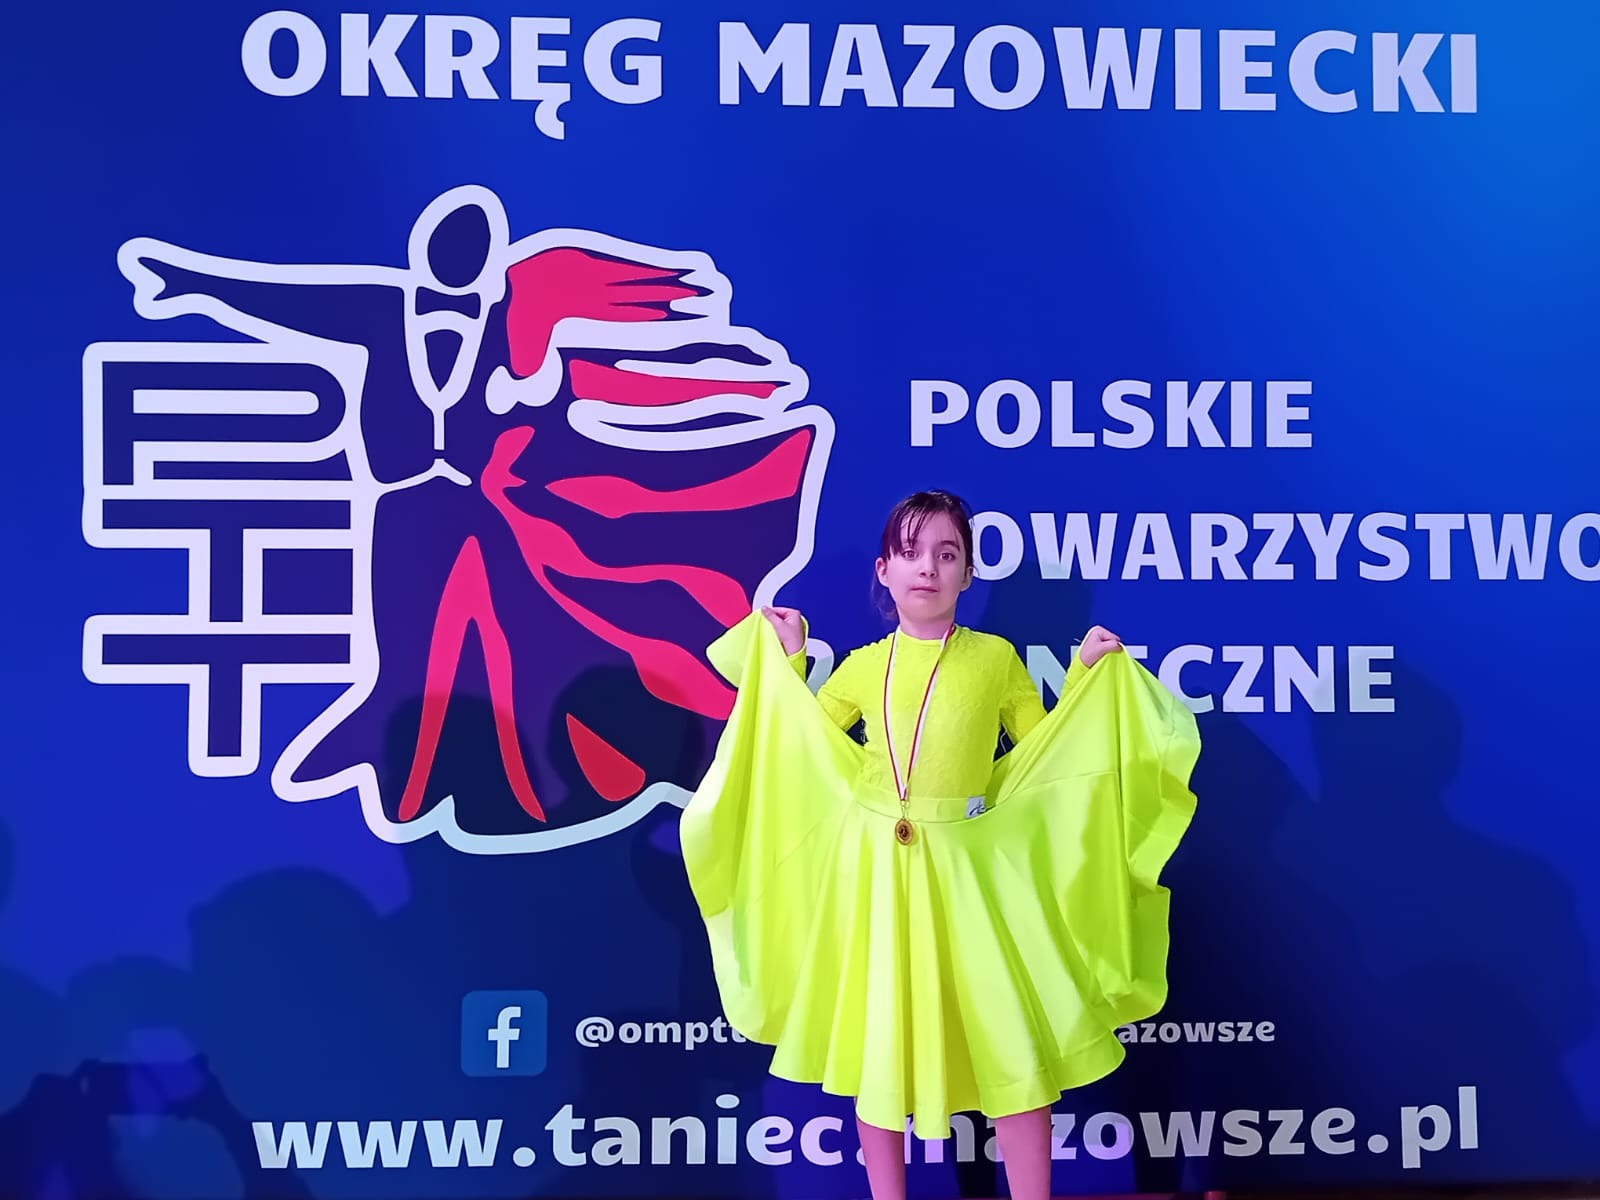 Prezentacja uczennicy w żółtej sukience, w tle baner reklamujący Polskie Towarzystwo Taneczne okręgu mazowieckiego